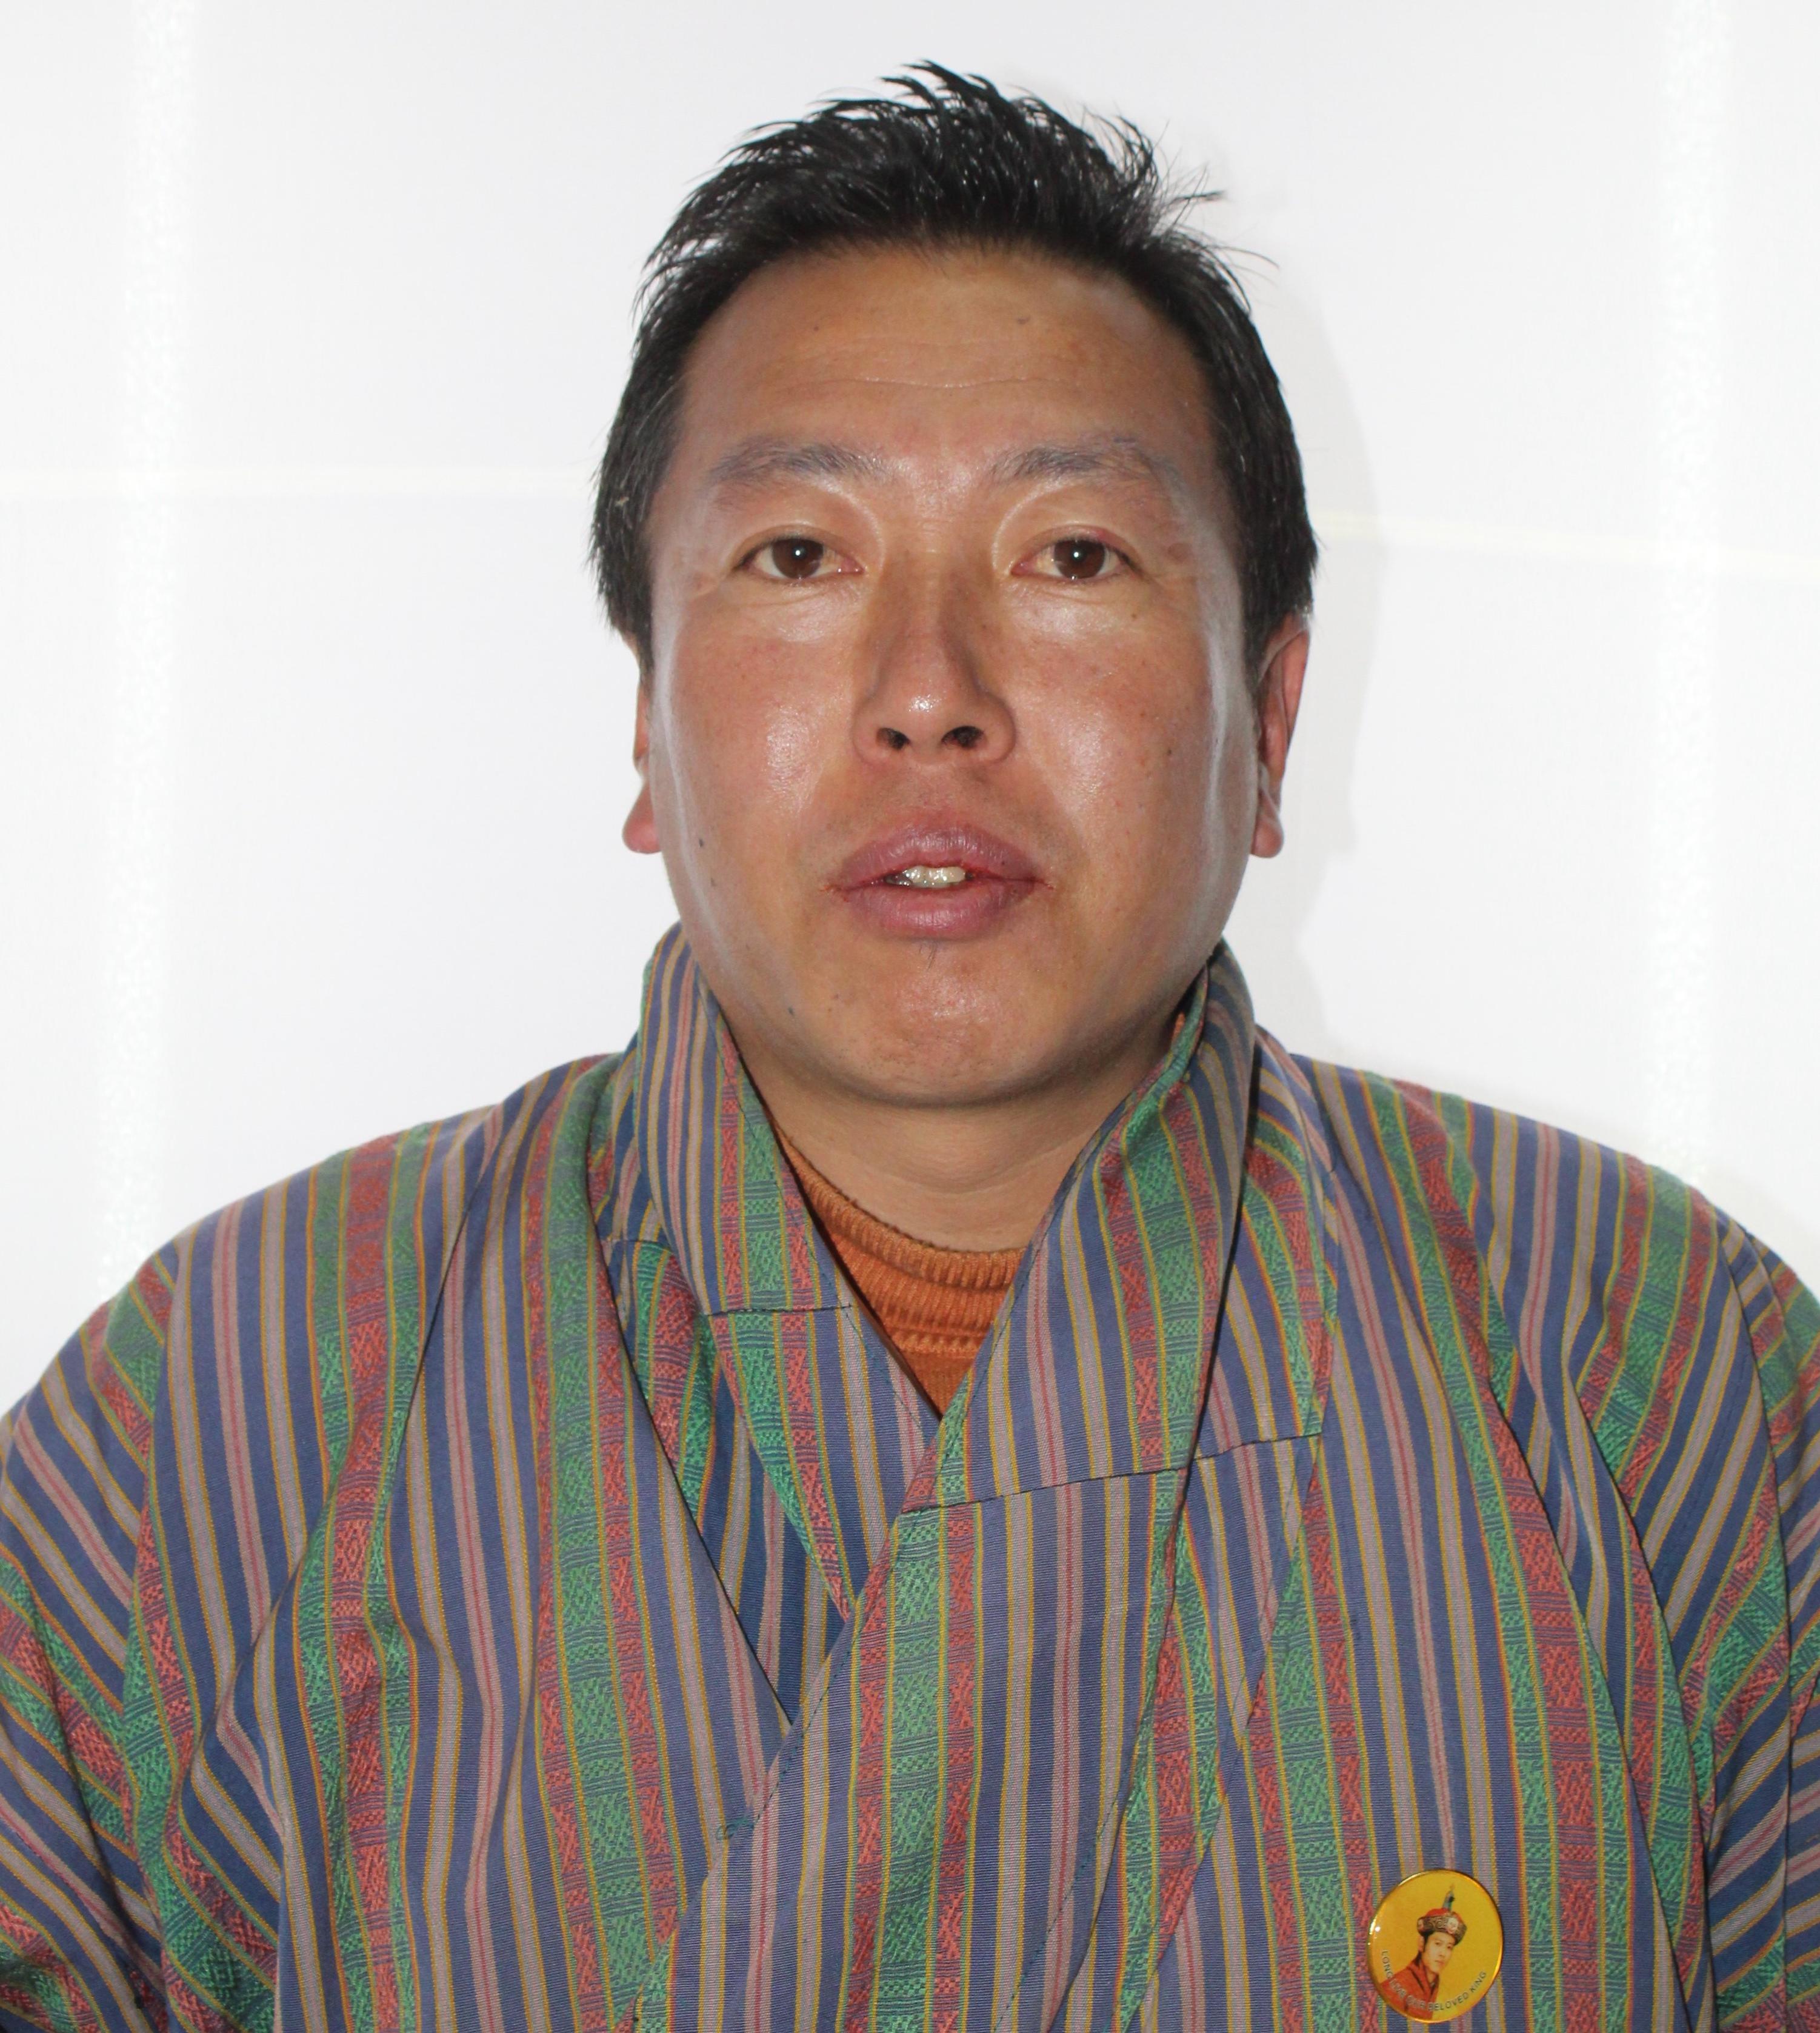 Dhendup Tshering